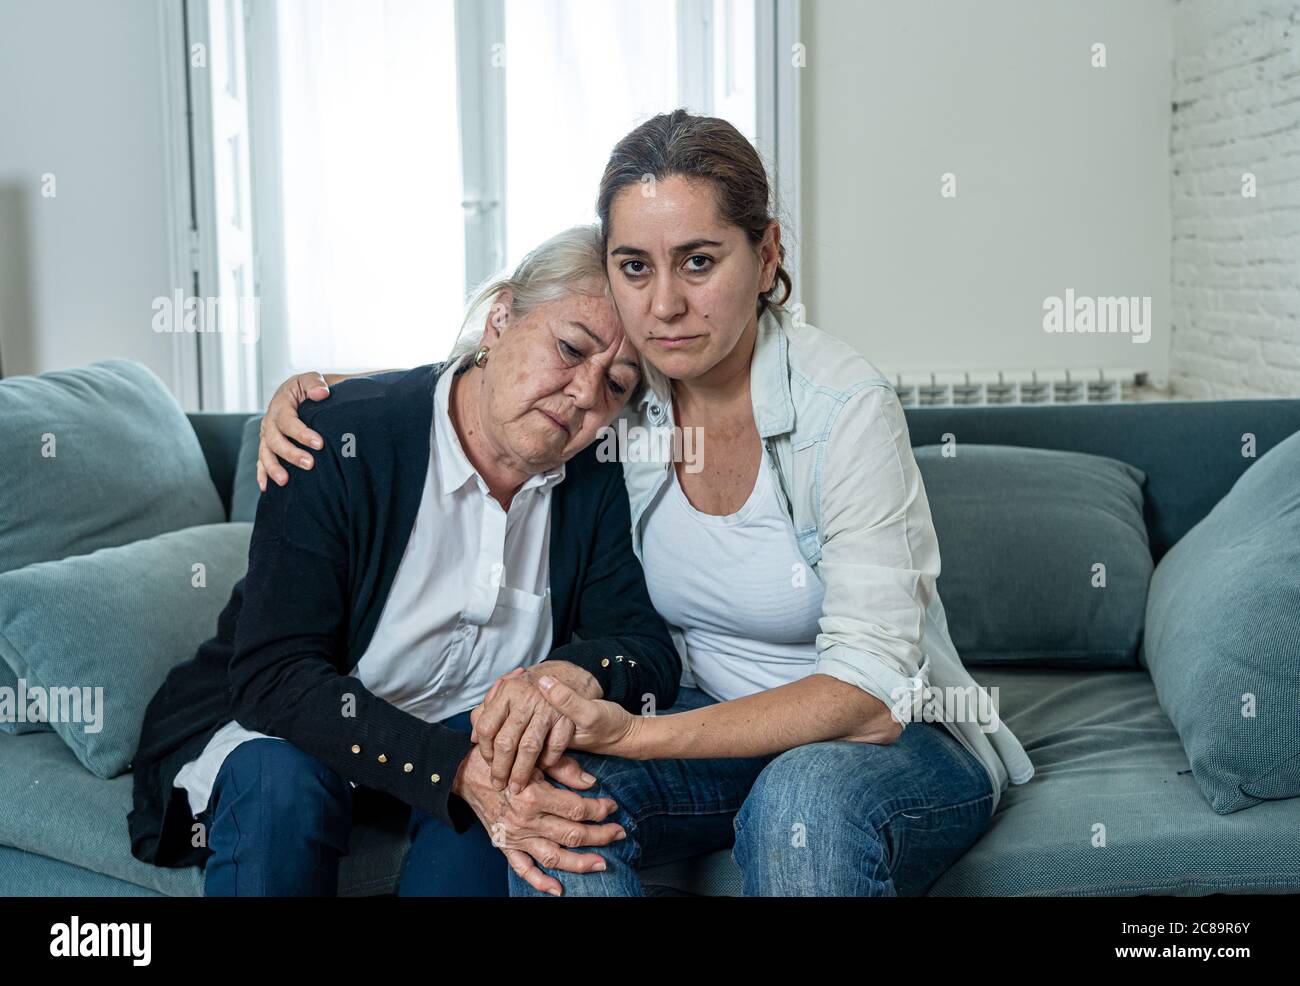 Depressi madre e figlia senior abbracciarsi a vicenda afflidendo la perdita di persone care in mezzo a pandemia di Coronavirus. Due donne tristi a casa in blocco Foto Stock